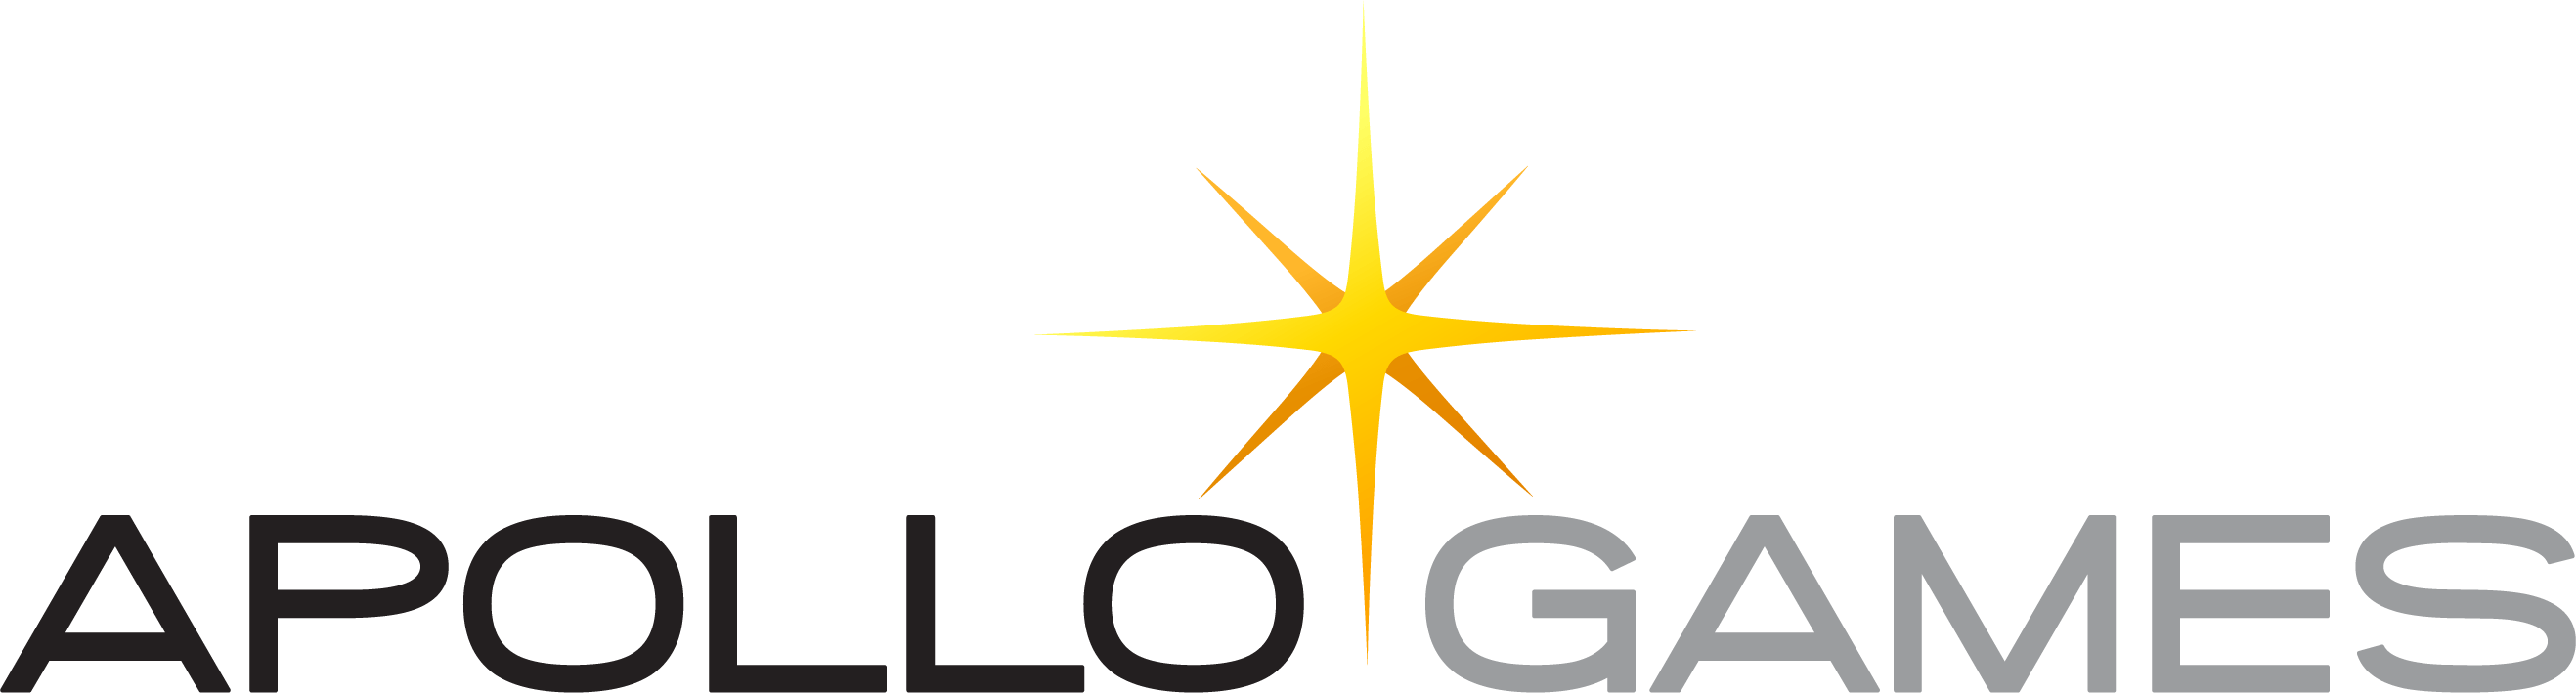 Apollo Games Logo PNG